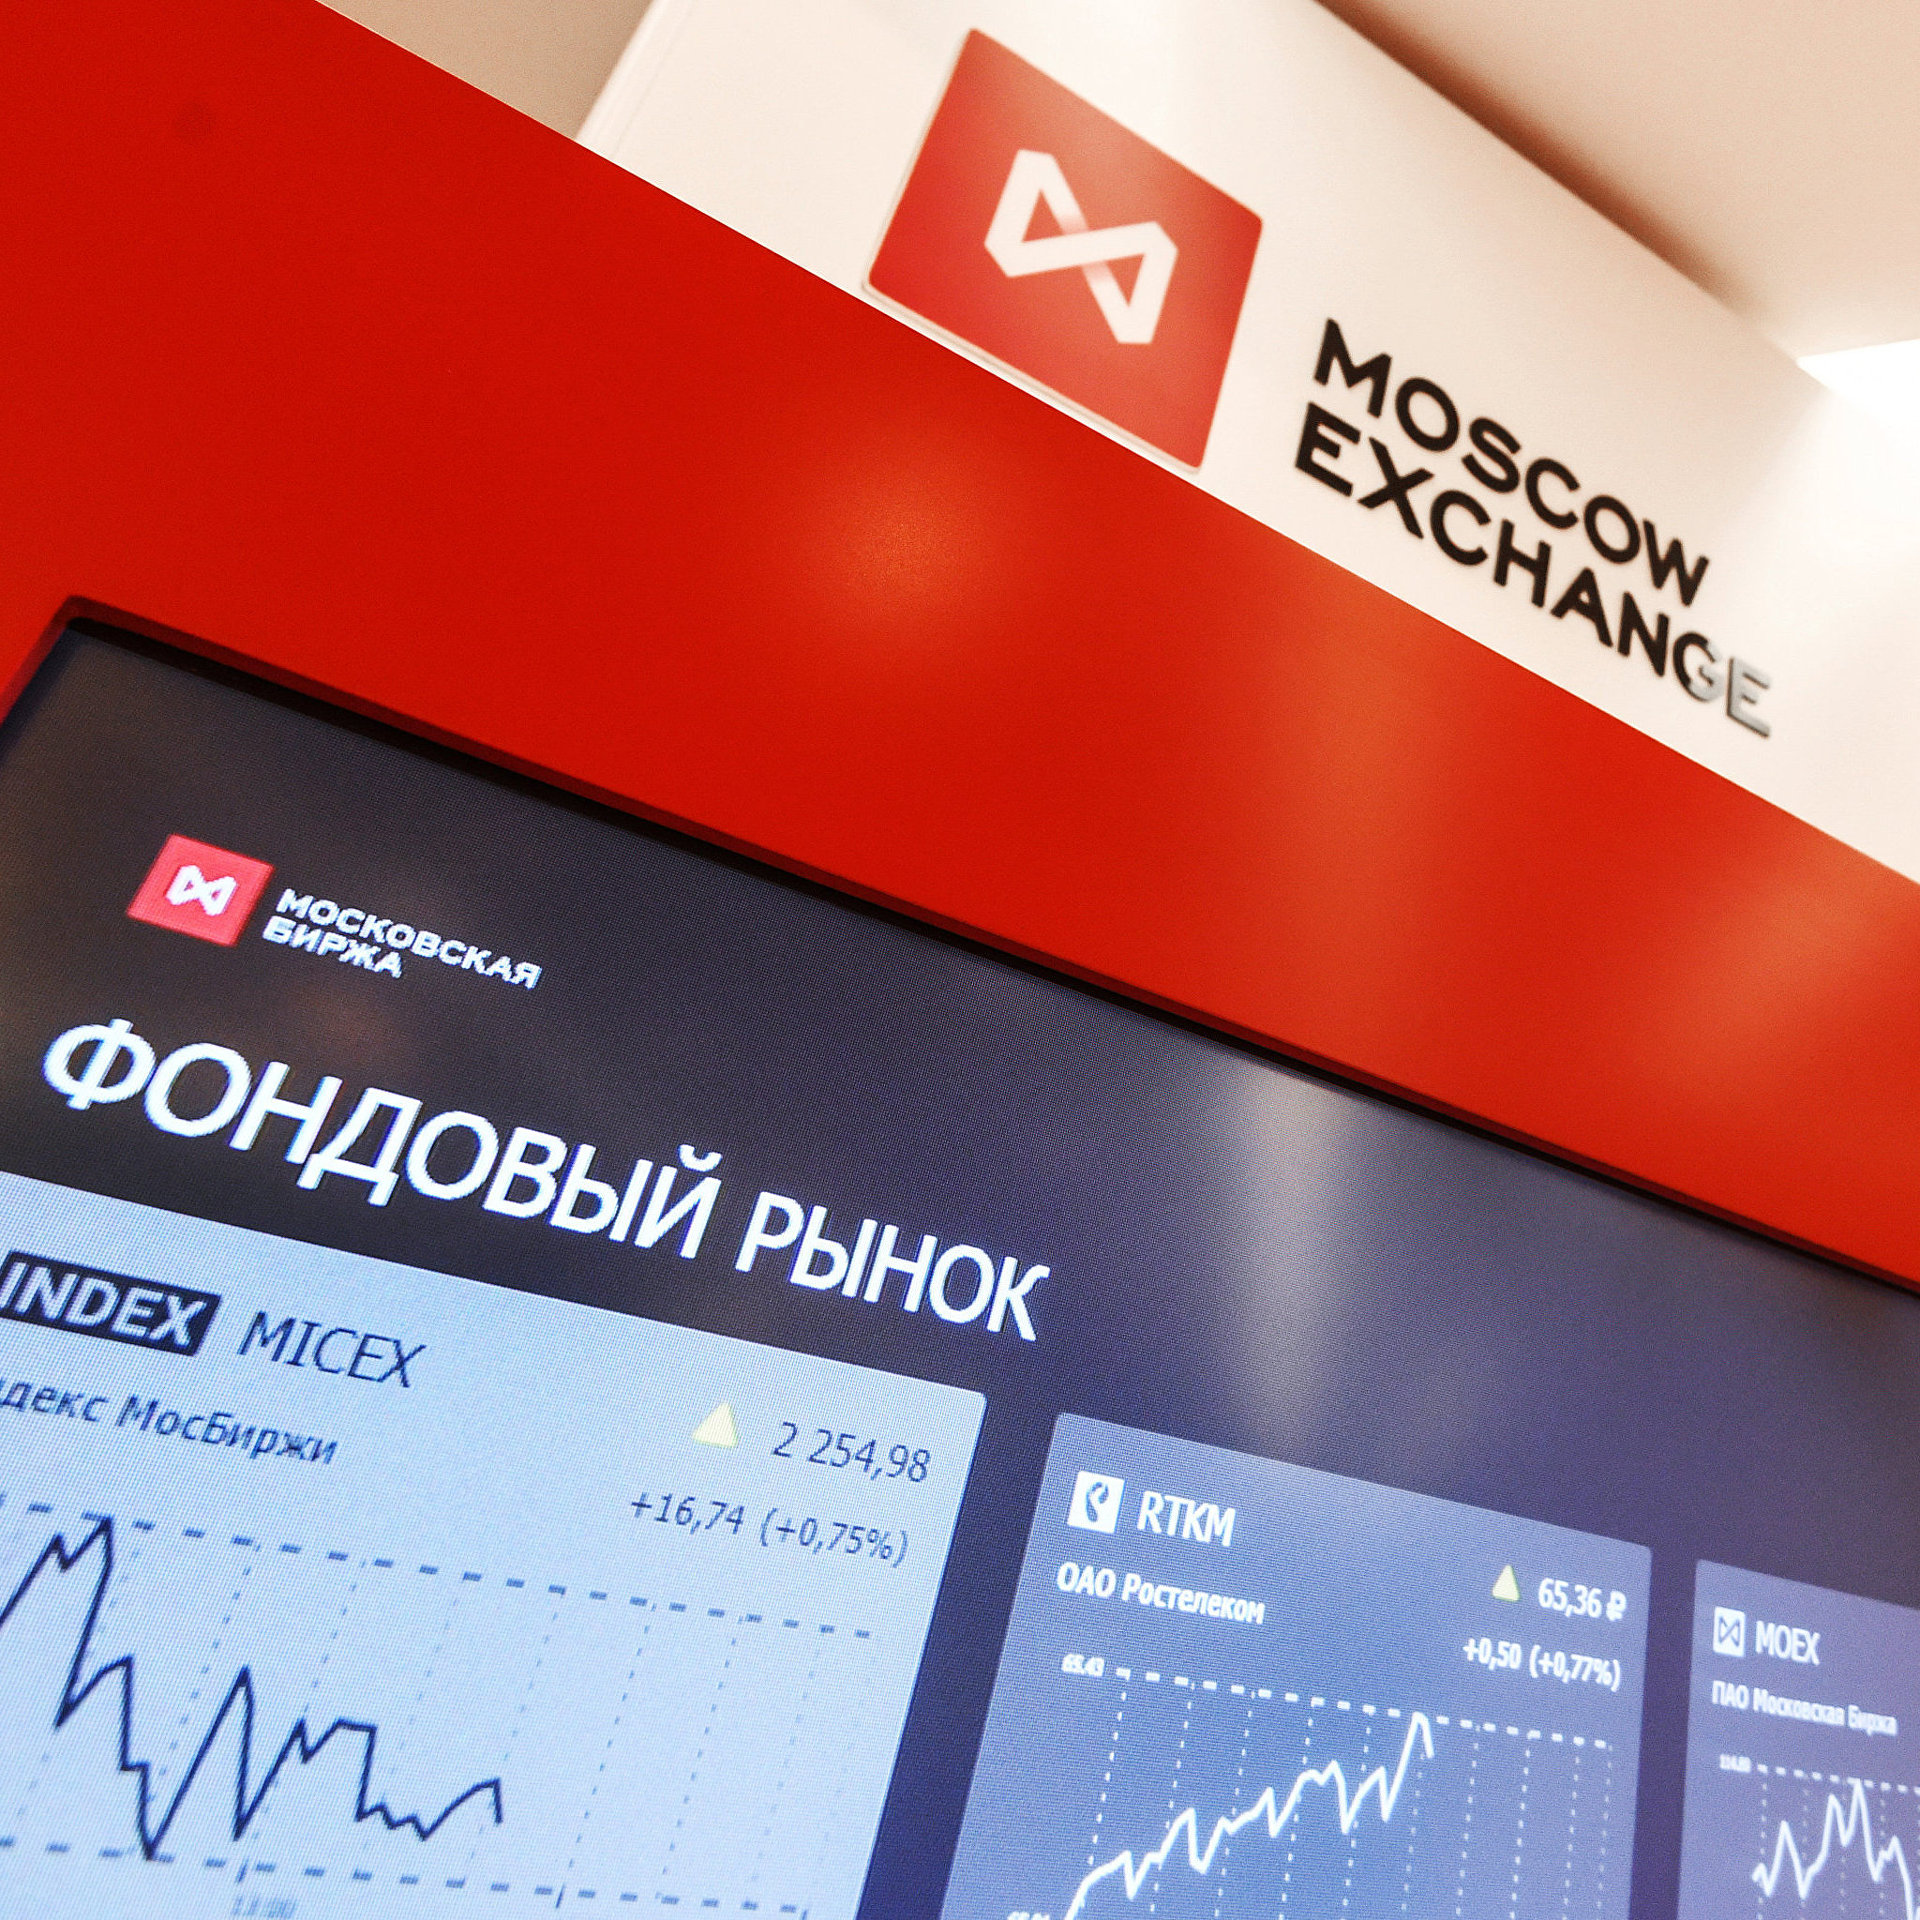 Московская биржа обмен валют майнинг hashing24 отзывы